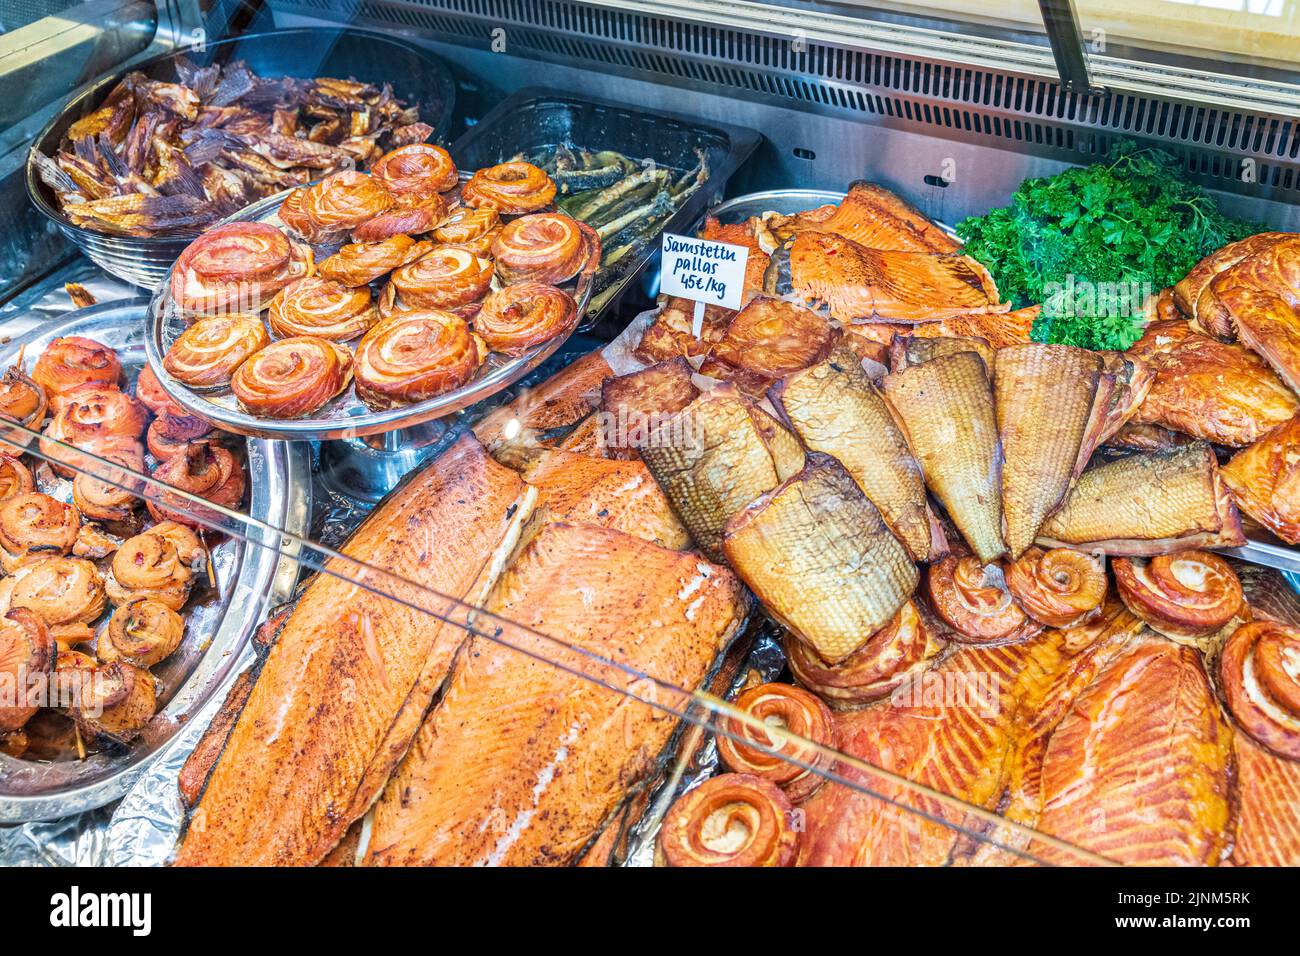 Geräucherter Lachs und Meeresfrüchte werden in der Alten Markthalle (Vanha Kauppachalli) auf dem Marktplatz in Helsinki, Finnland, verkauft Stockfoto